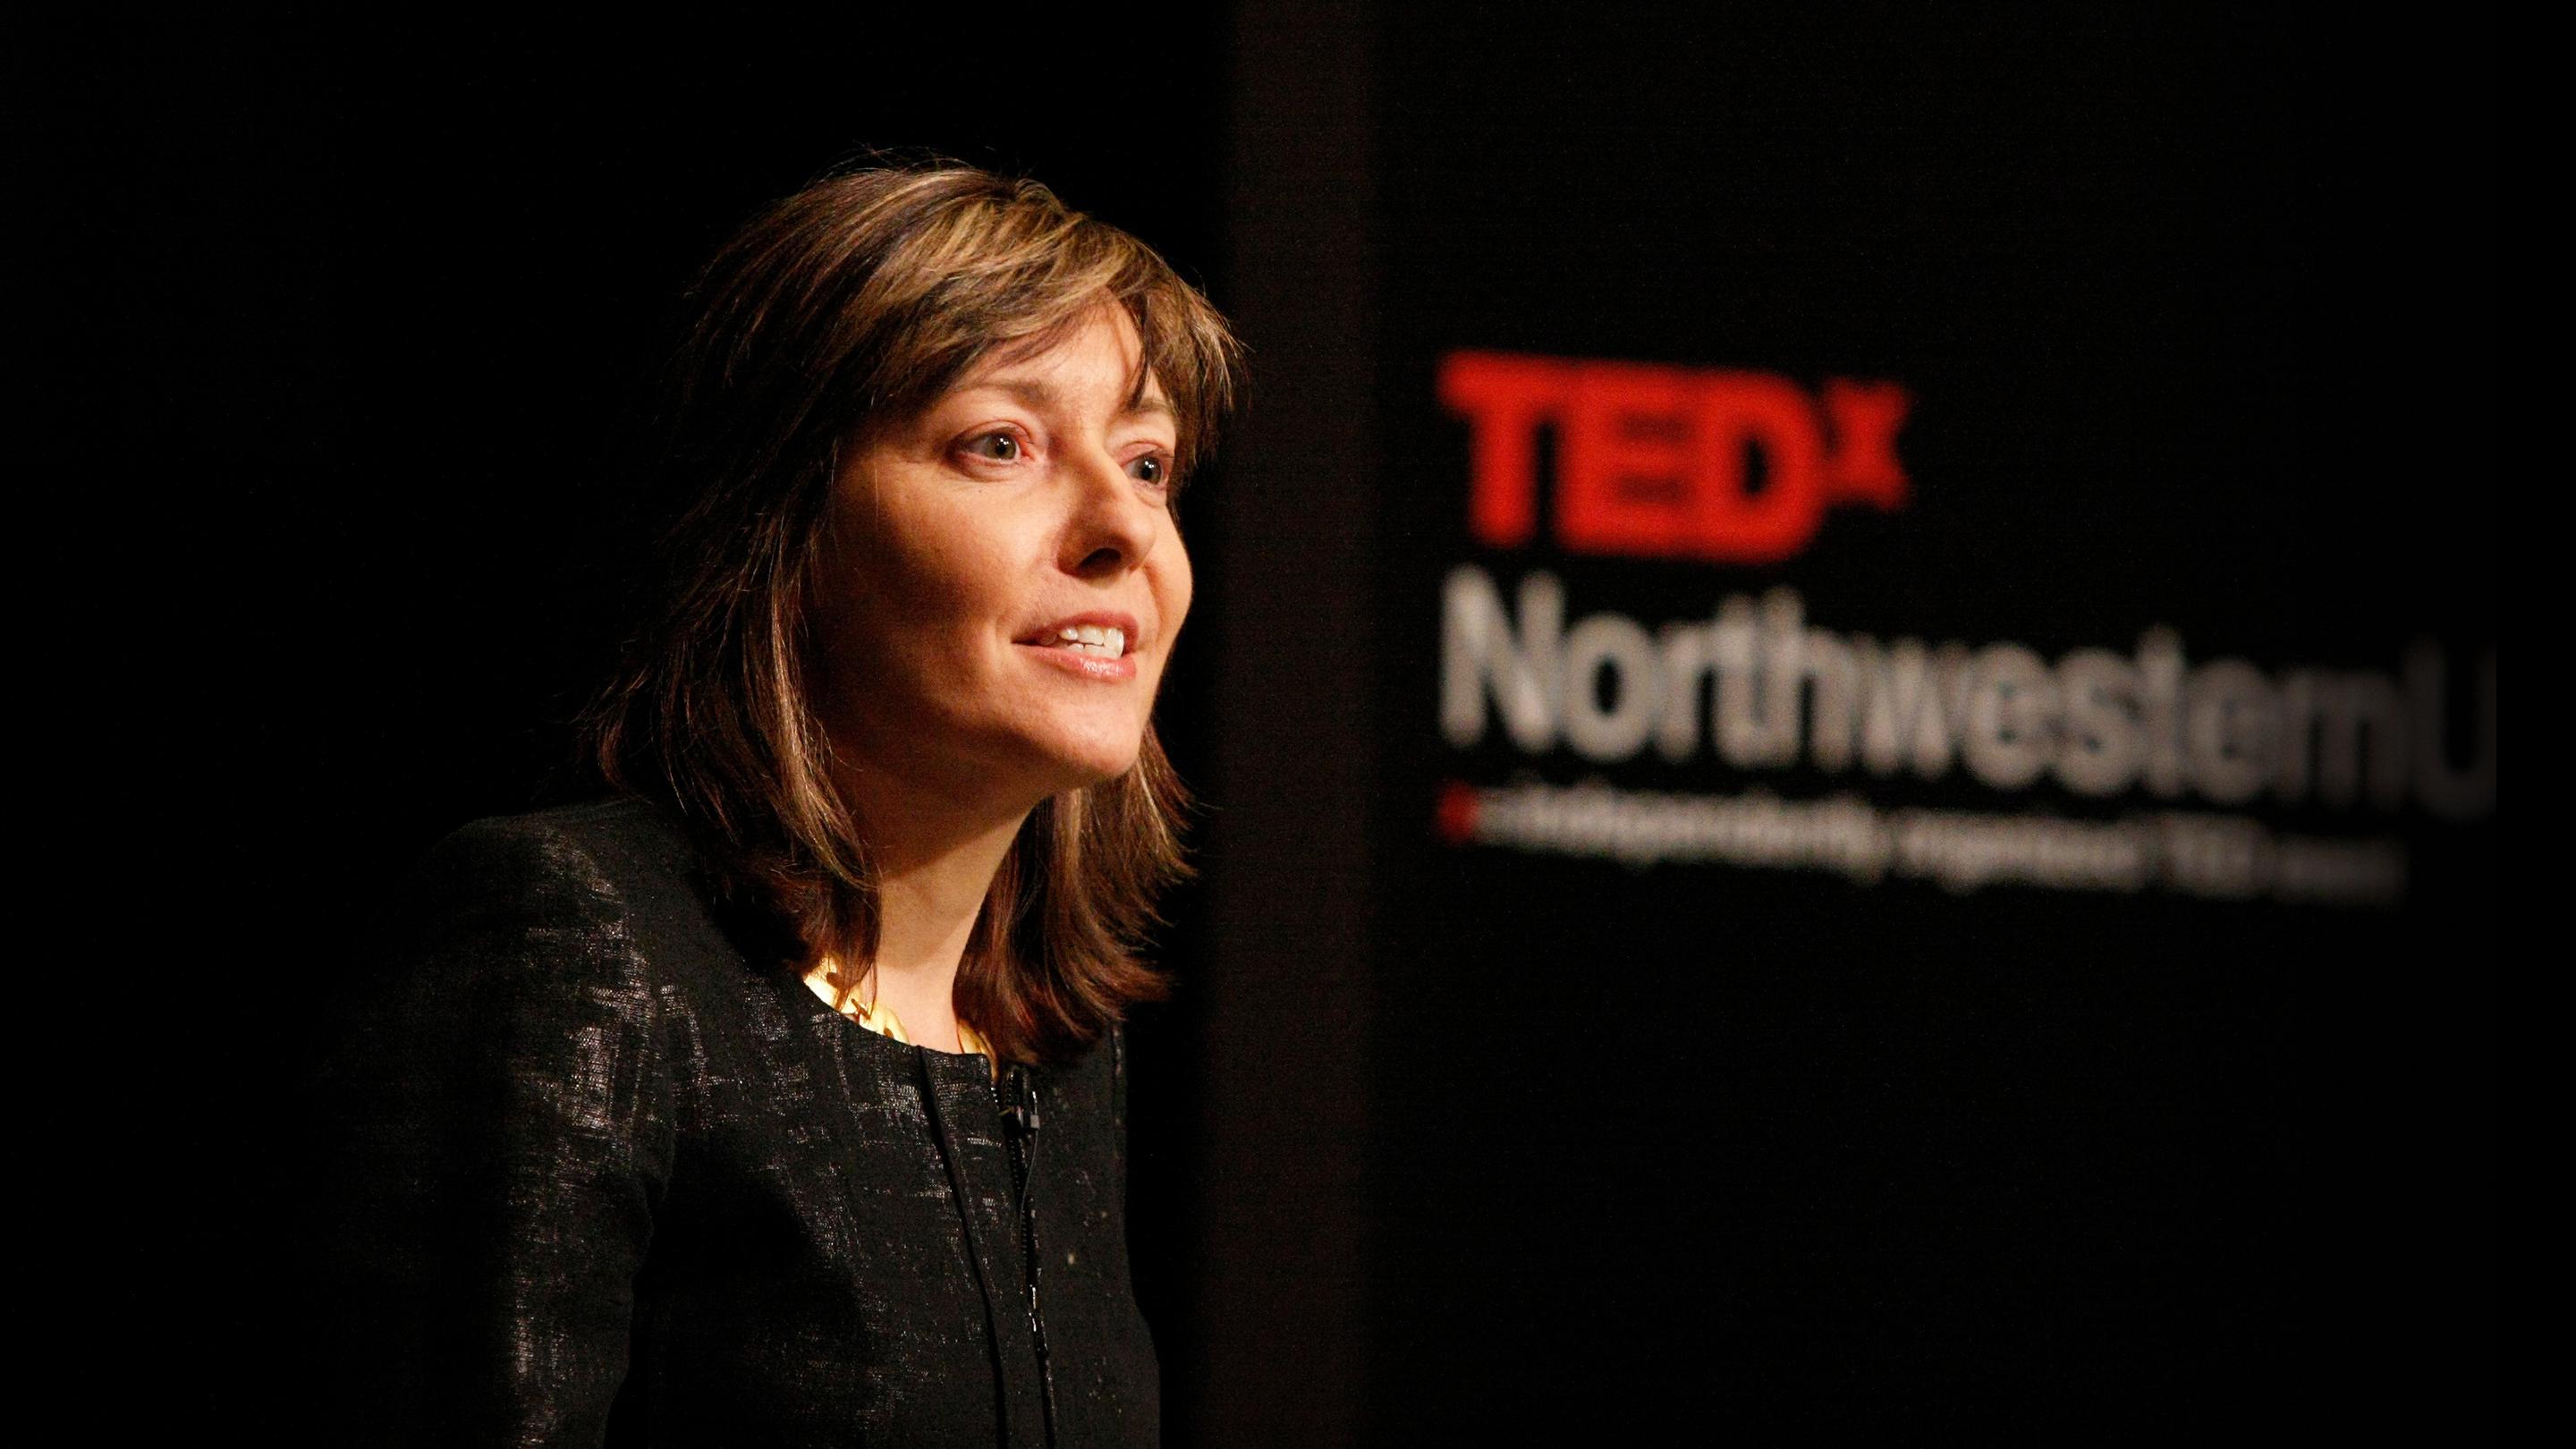 アリス・ドレガー: 解剖学的性差は宿命か？ | TED Talk